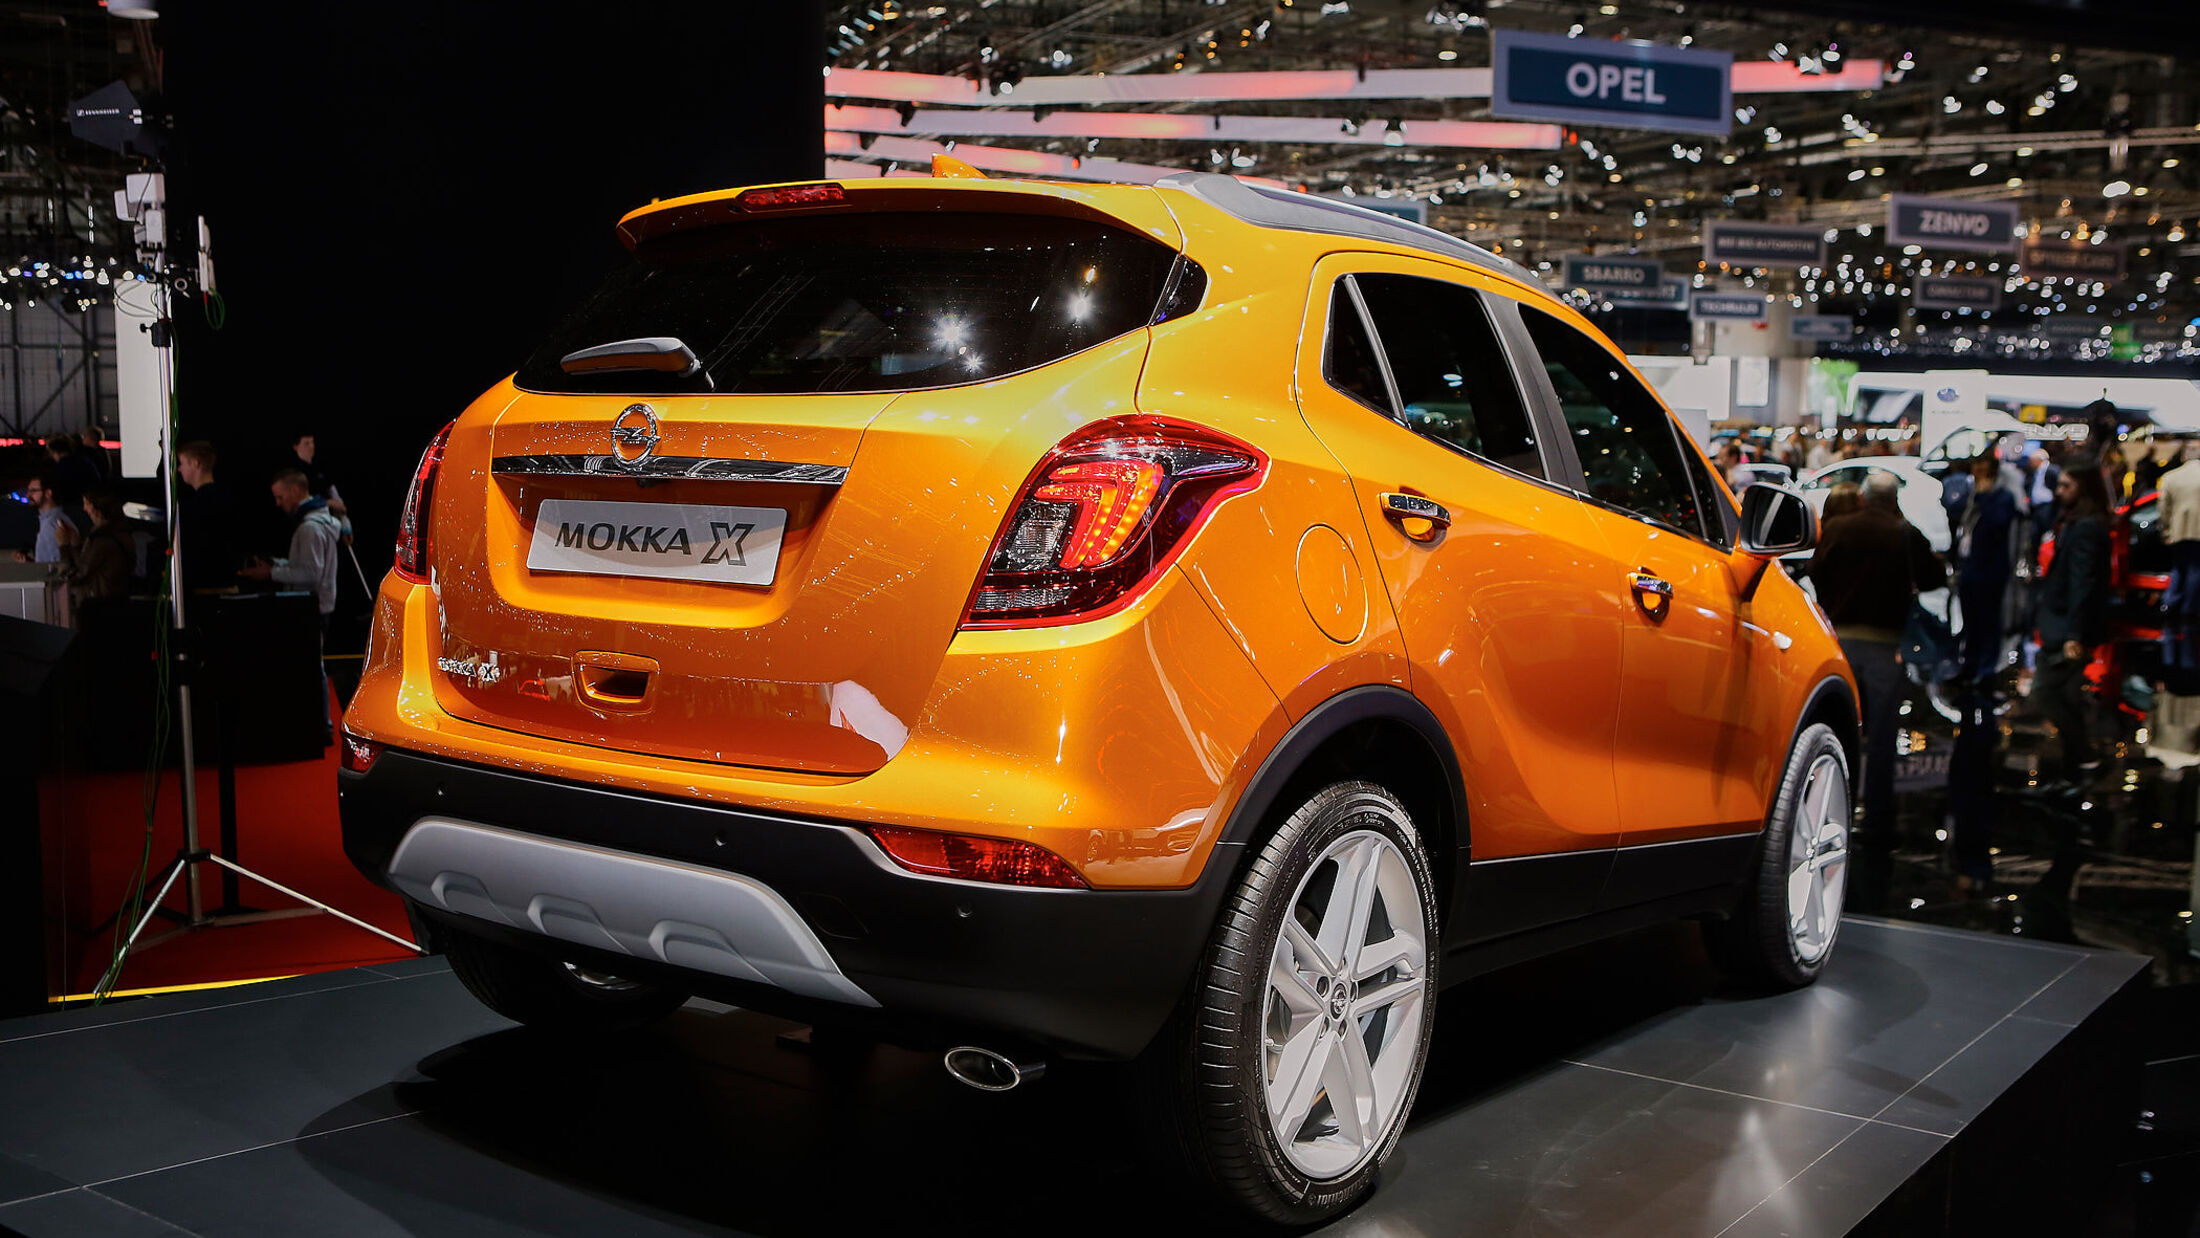 https://imgr1.auto-motor-und-sport.de/Opel-Mokka-X-jsonLd16x9-e7fa9207-932140.jpg